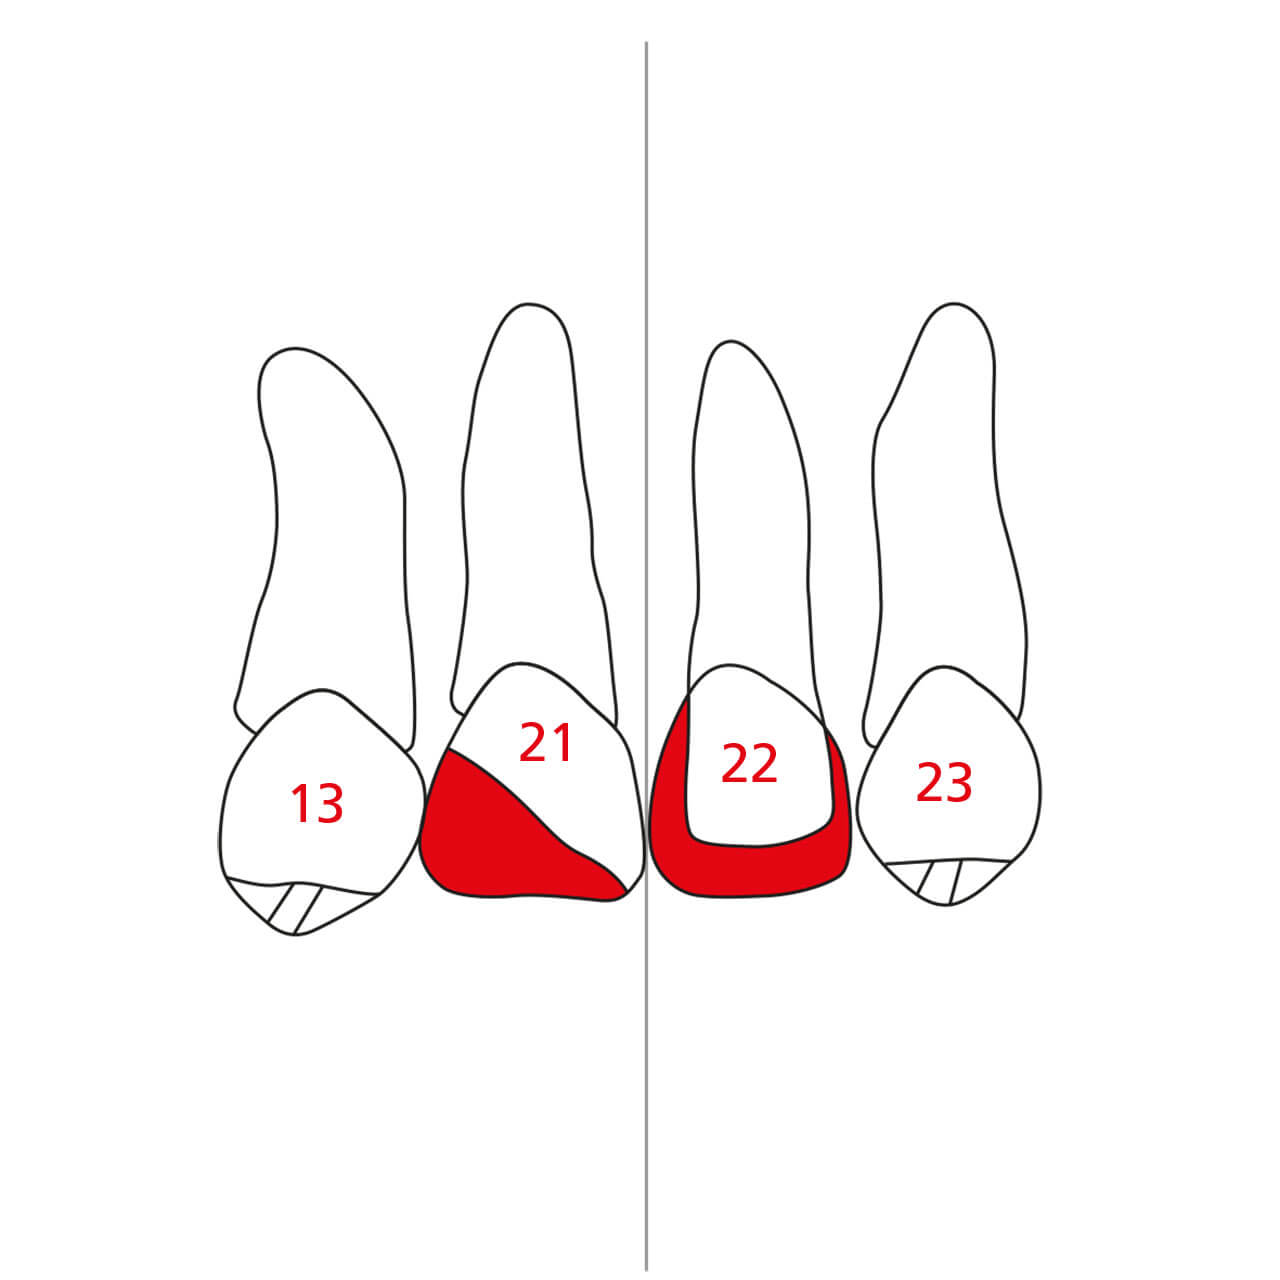 Abb. 3a und b Skizzierung der gewünschten/geplanten kieferorthopädischen Zahnbewegung.